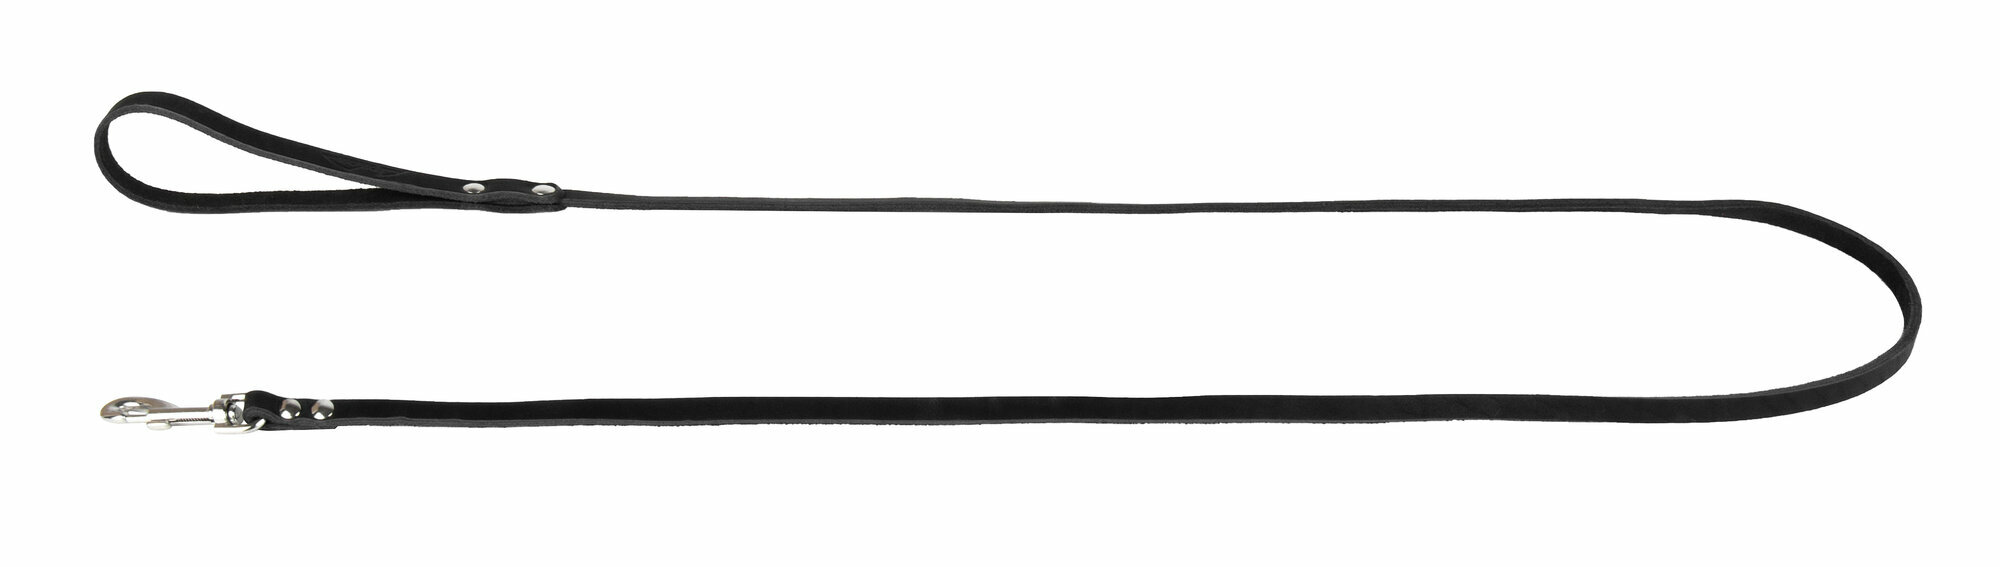 Поводок аркон кожаный 1.4м х 8мм однослойный, цвет черный